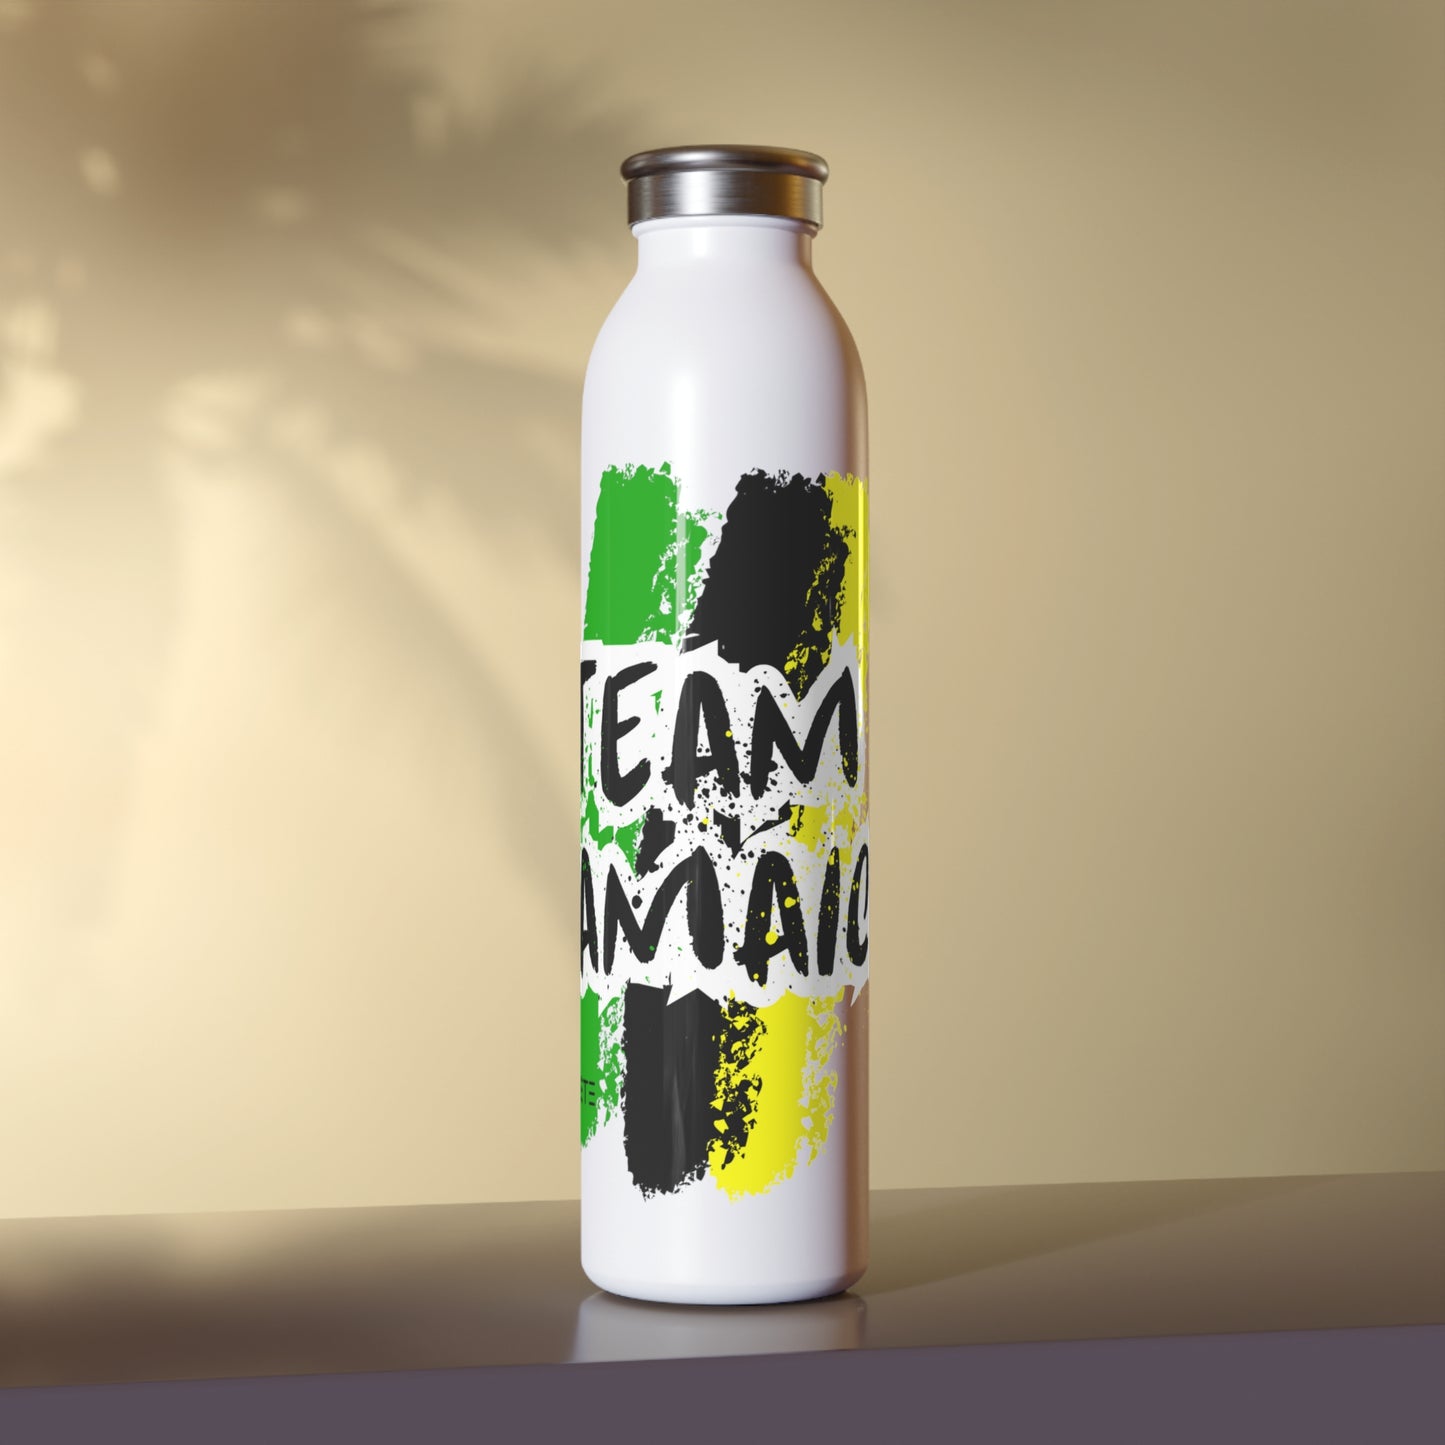 Team Jamaica Slim Water Bottle